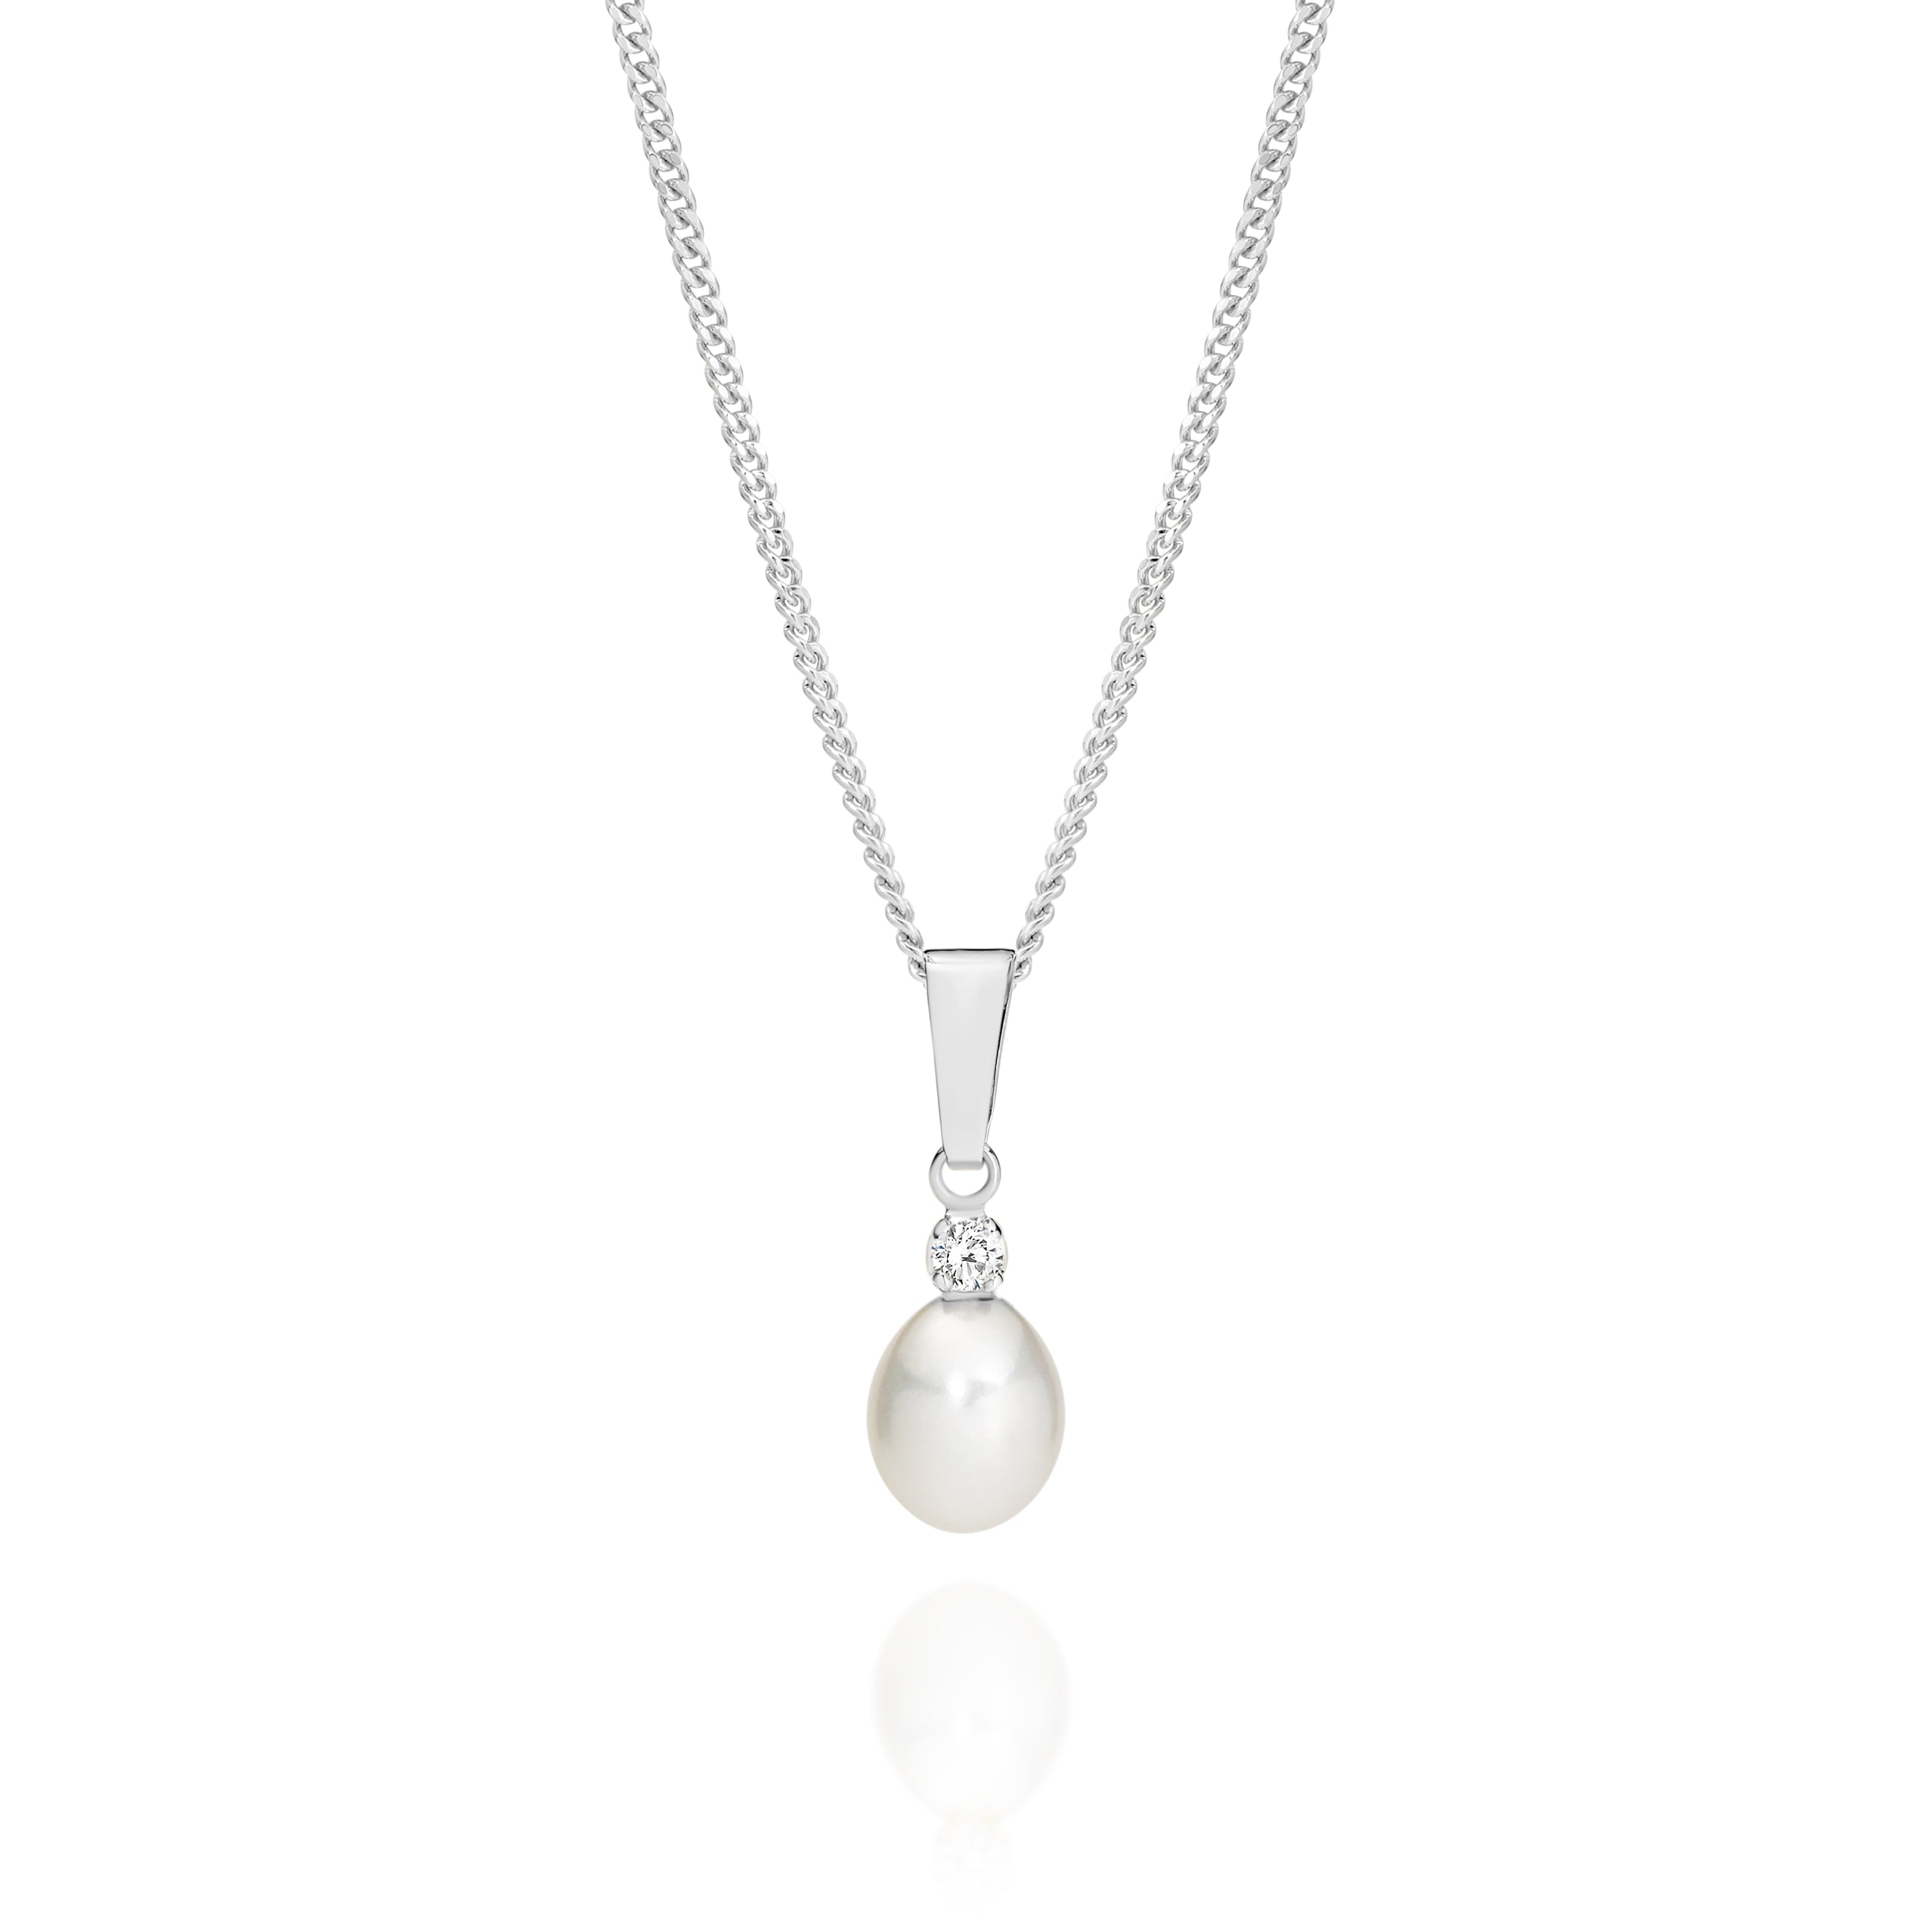 9ct white gold pearl & CZ pendant